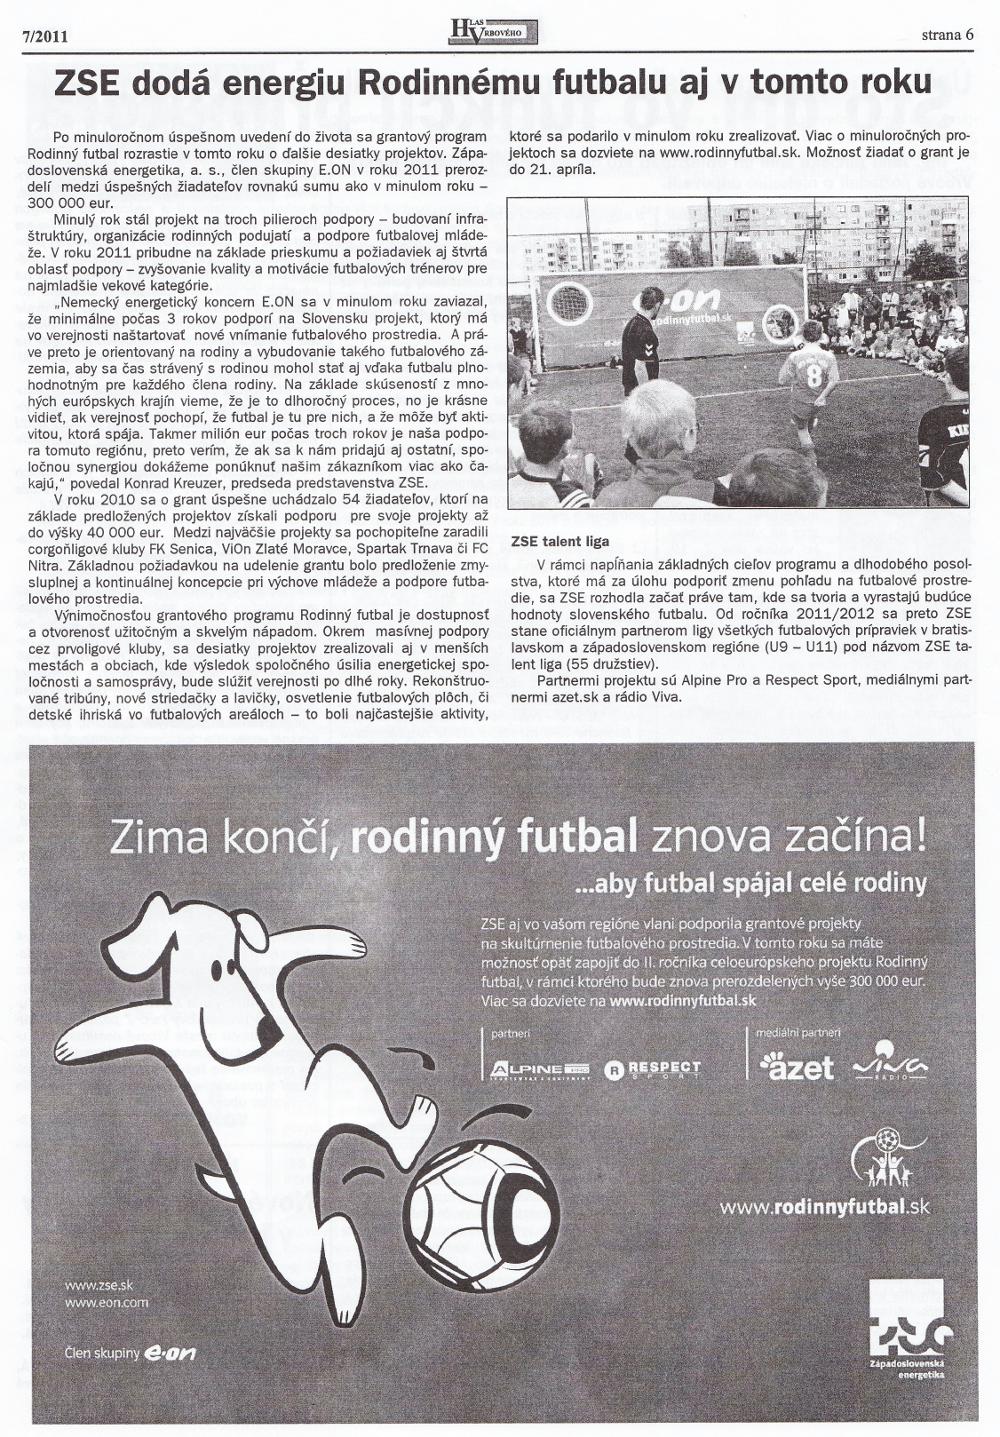 Hlas Vrbového 06/2011, strana 6